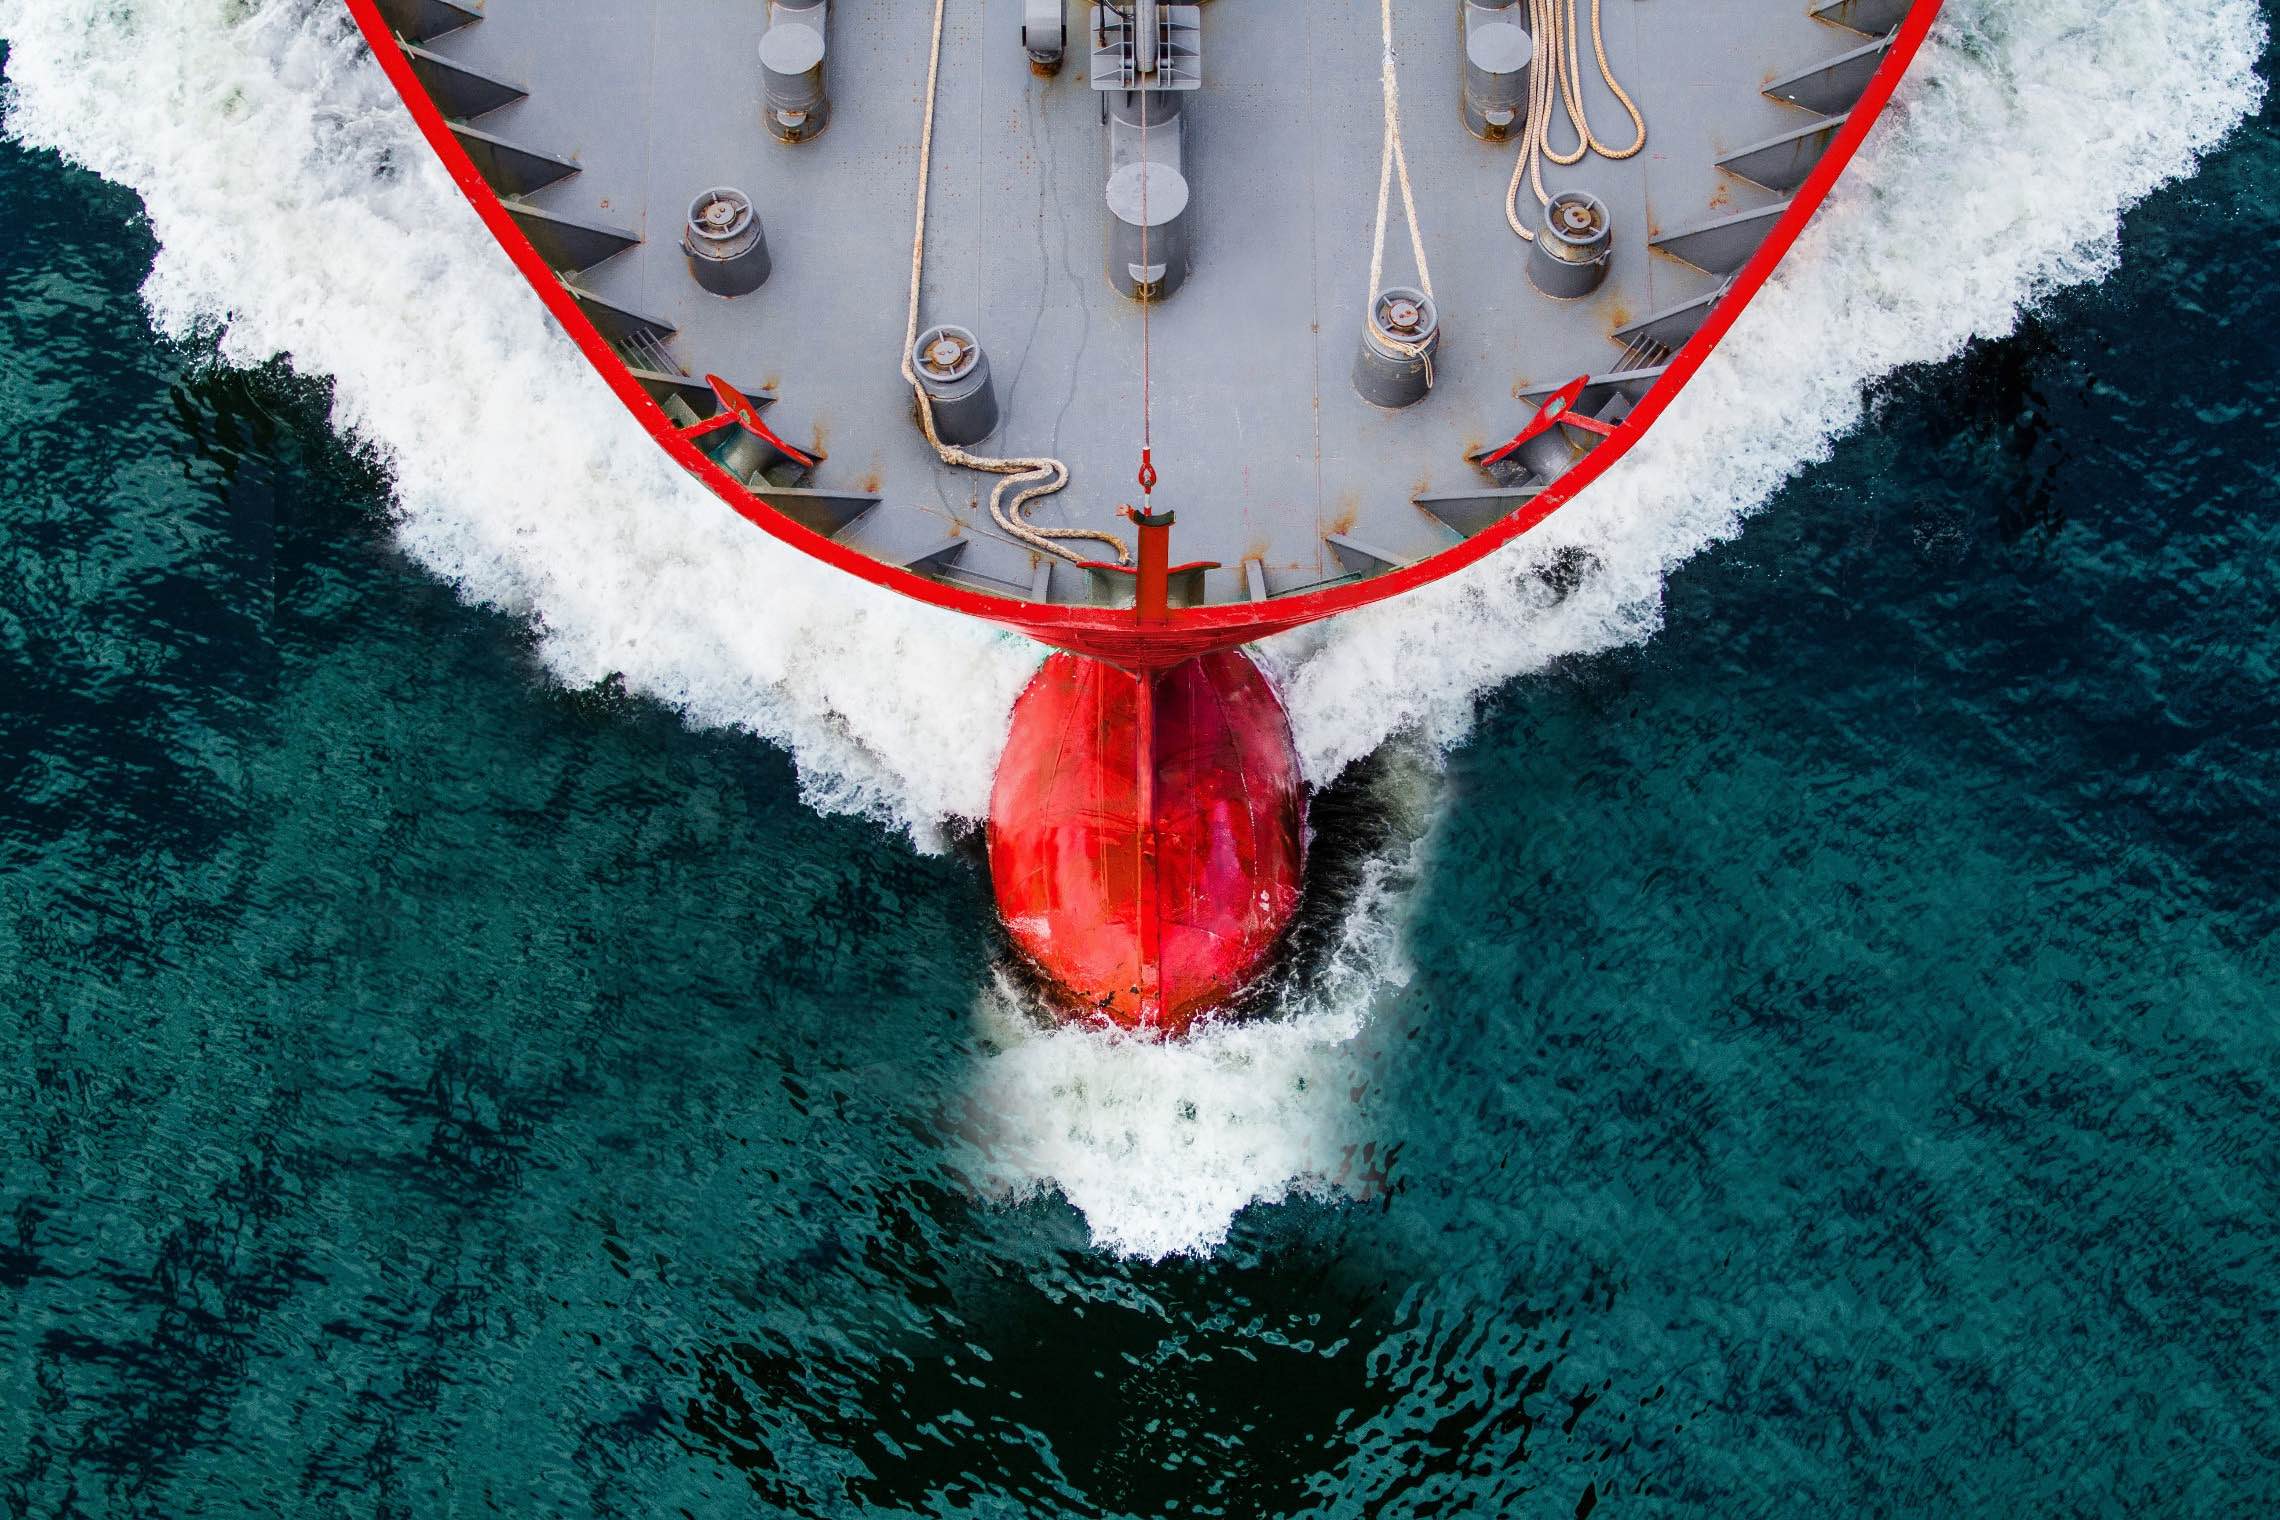 Vessel Safety management system